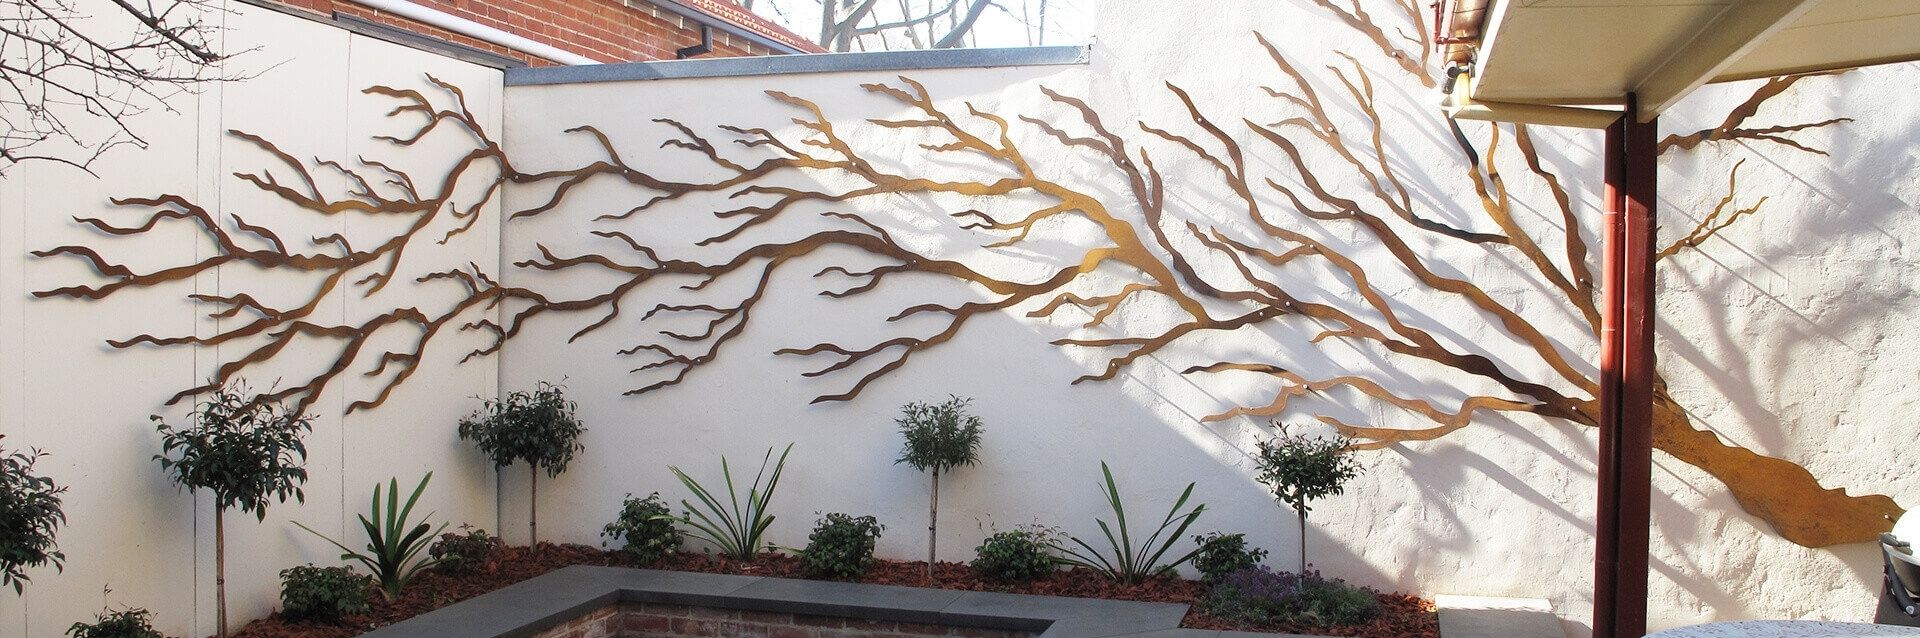 Outdoor Wall Hangings Art Japsinfo Australia Nz Sculptures Metal In Garden Wall Art (View 11 of 20)